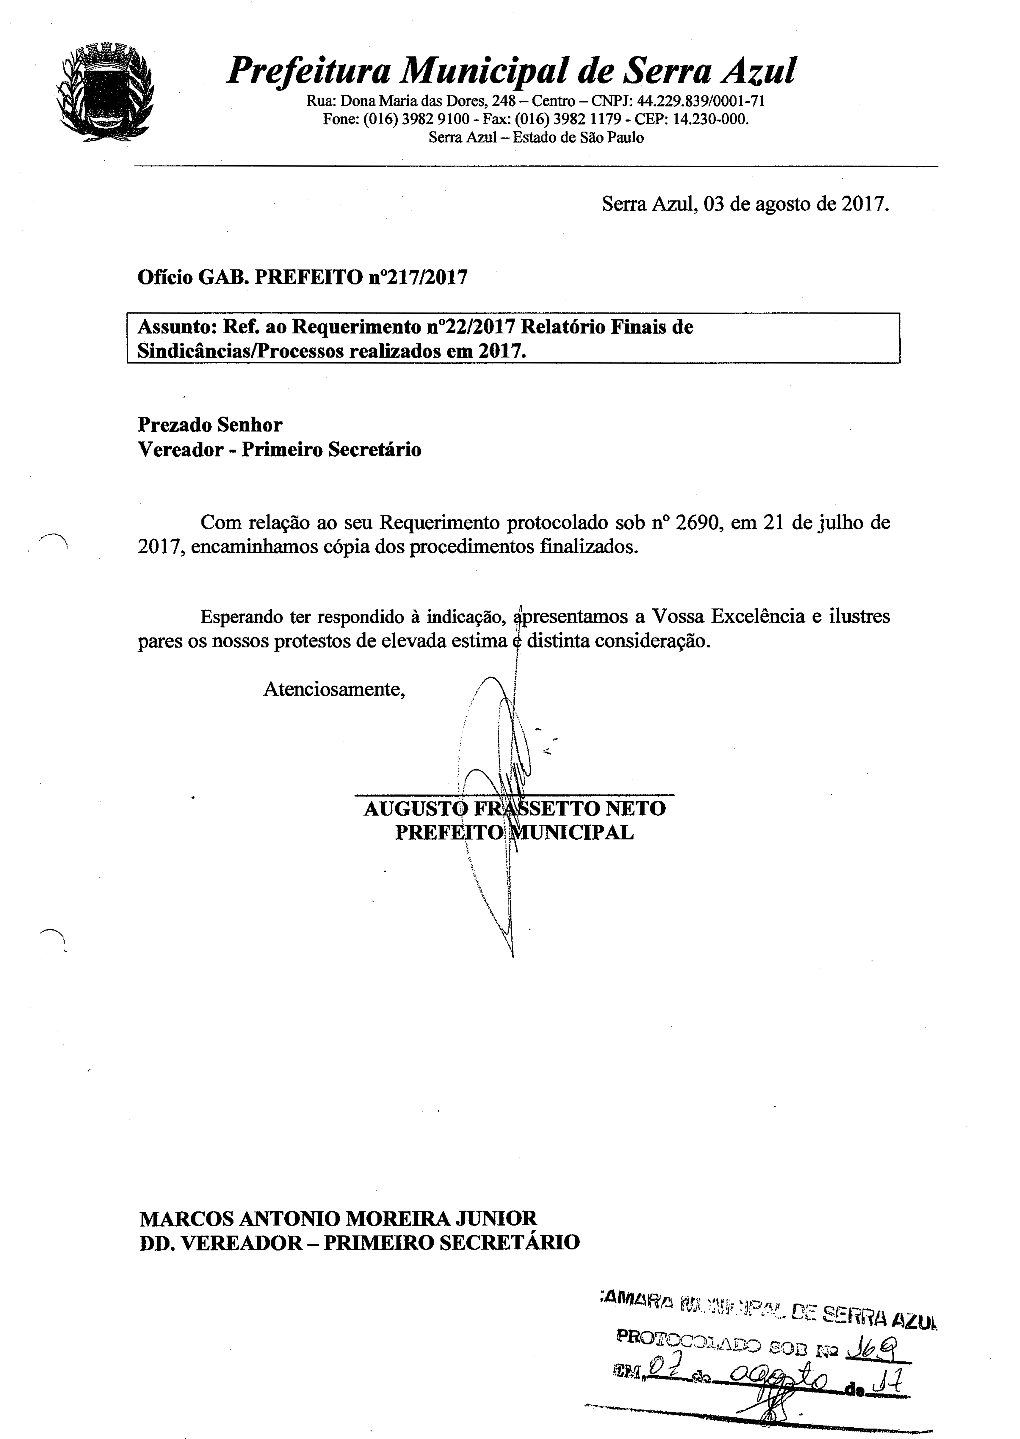 Prefeitura Municipal De Serra Azul Rua: Dona Maria Das Dores, 248 - Centro - CNPJ: 44.229.839/0001-71 Fone: (016) 3982 9100- Fax: (016) 3982 1179 - CEP: 14.230-000